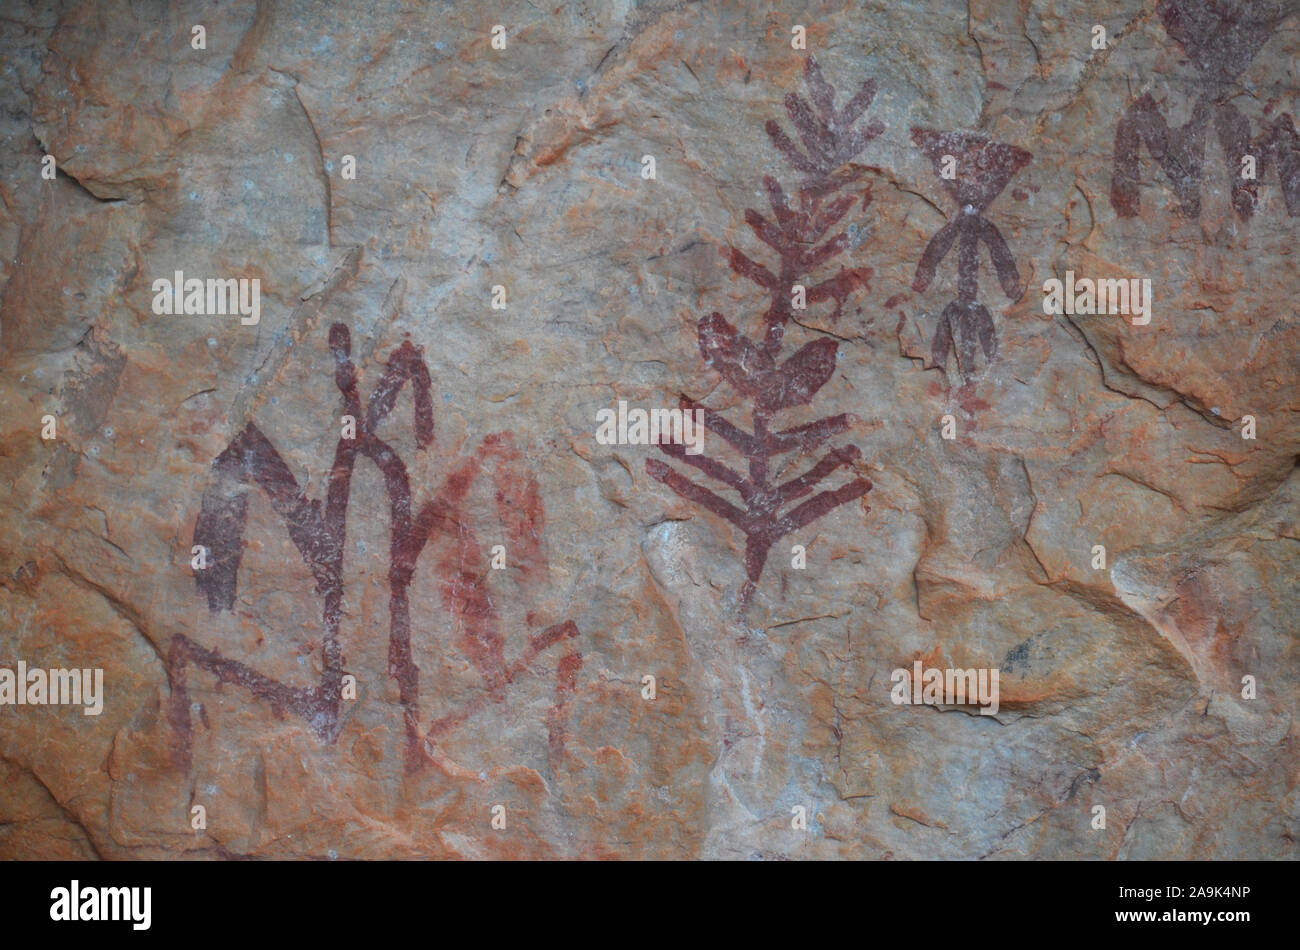 Peña Escrita pinturas rupestres de Fuencaliente (Ciudad Real, Sur de España), un notable ejemplo de arte rupestre post-Paleolítico Foto de stock